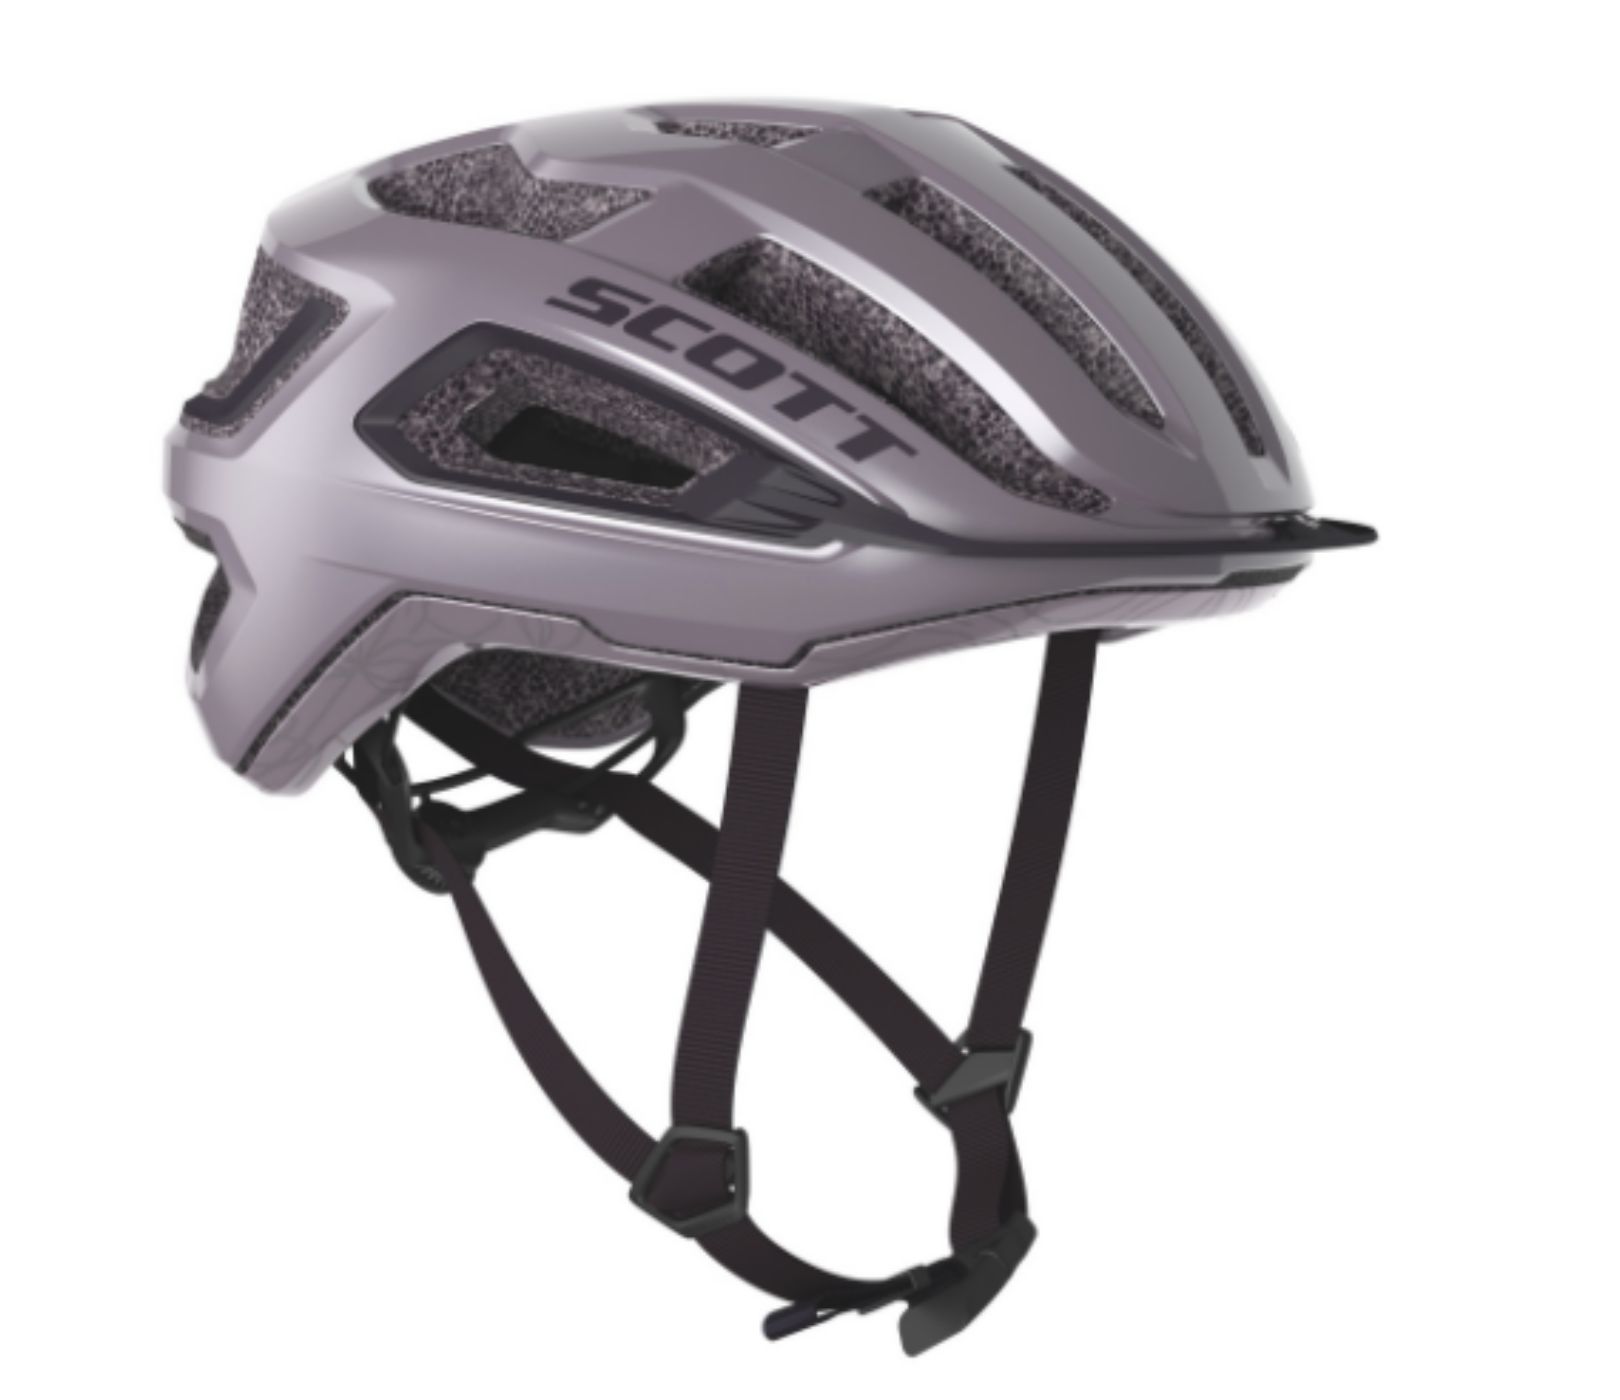 Scott Silver ARX CE Mountain Bike Helmet 